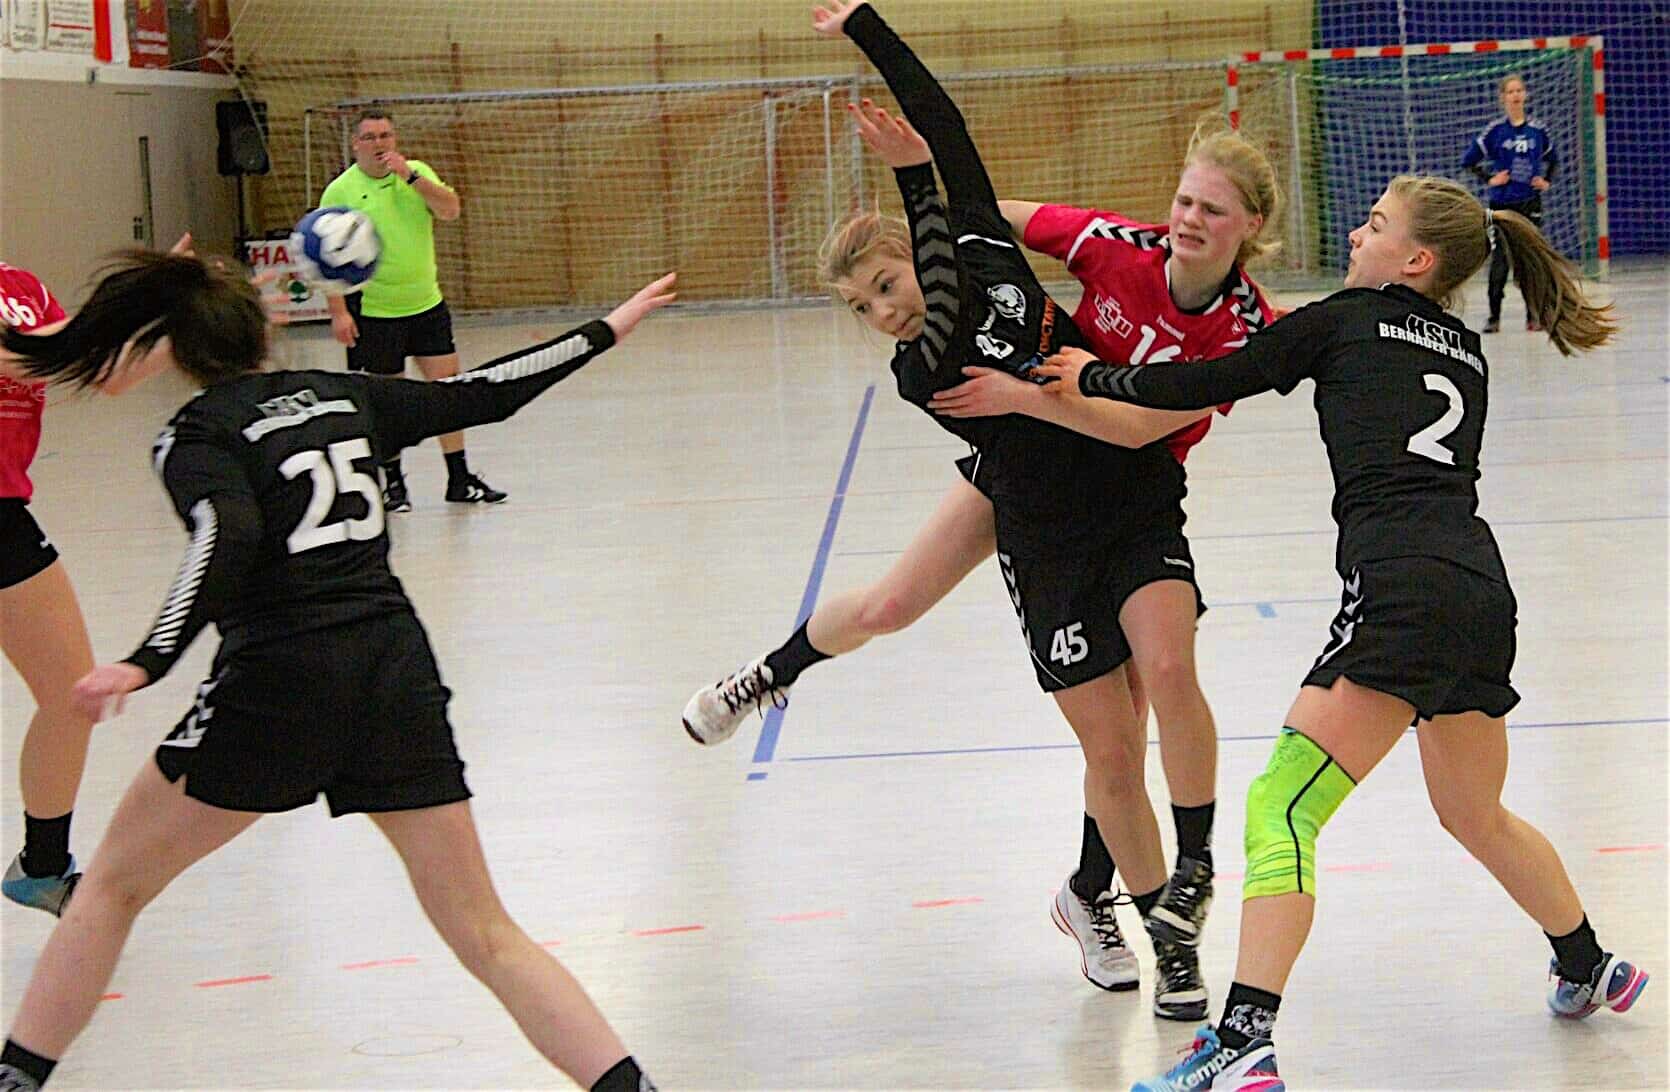 Handball aus Bernau - Wochenend-Ergebnisse der Bernauer Bären